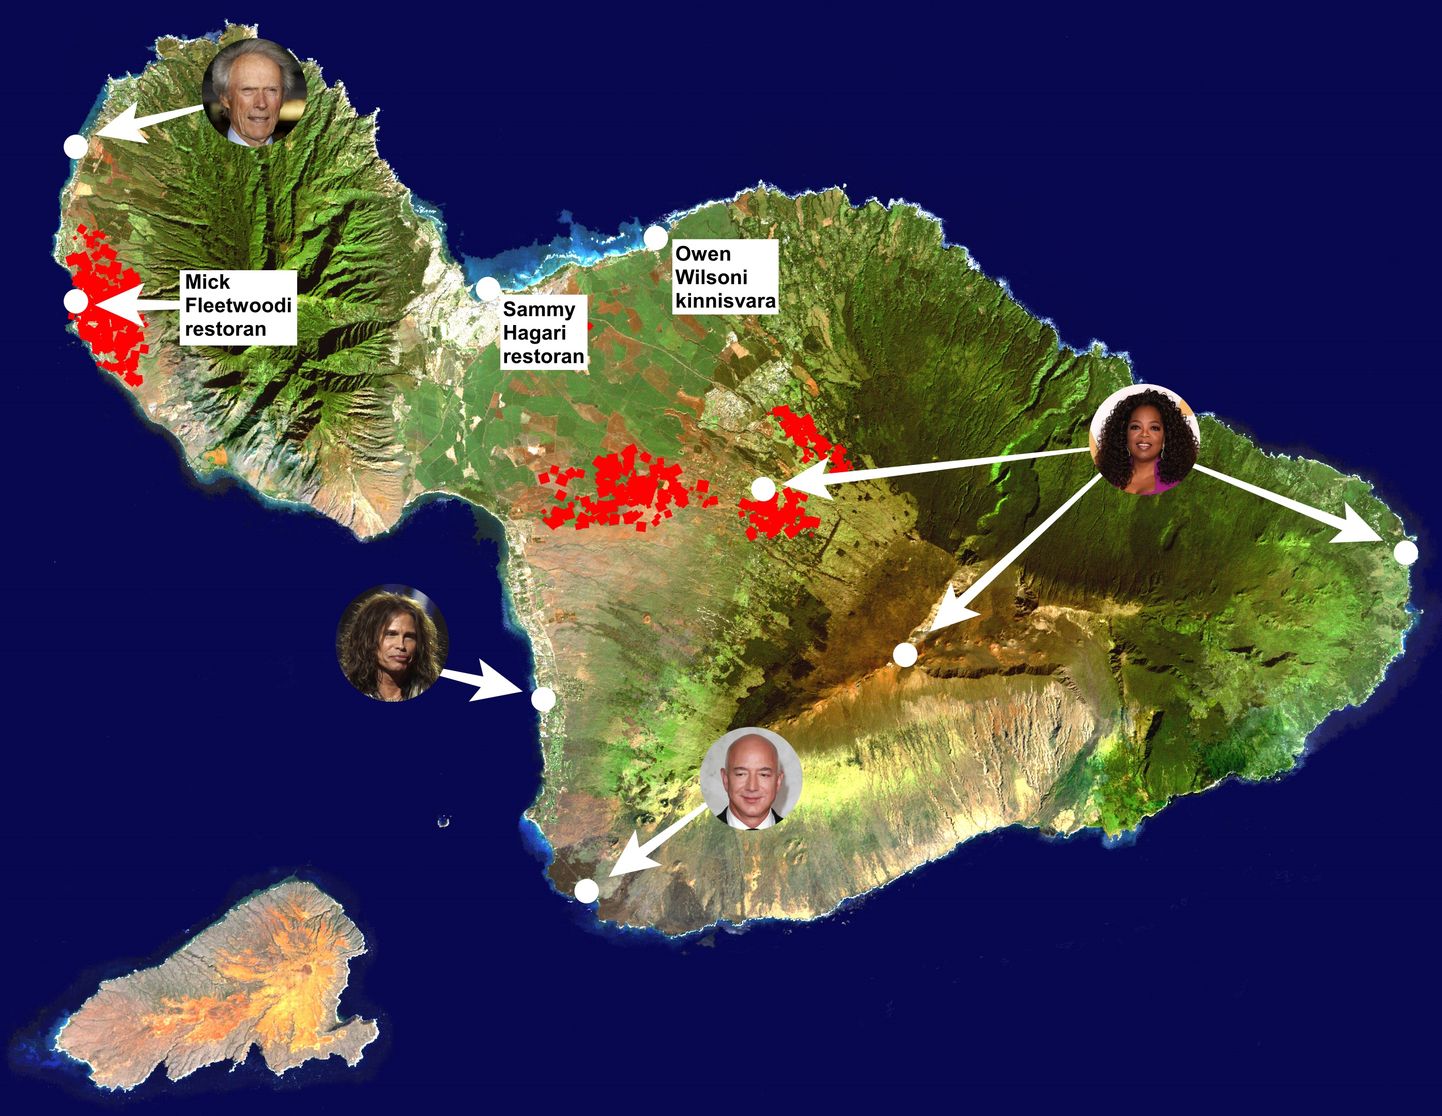 Maastikupõlengute all kannataval Maui saarel omavad kinnisvara paljude seas sellised staarid nagu Clint Eastwood, Steve Tyler, Jezz Bezos ja Oprah Winfrey